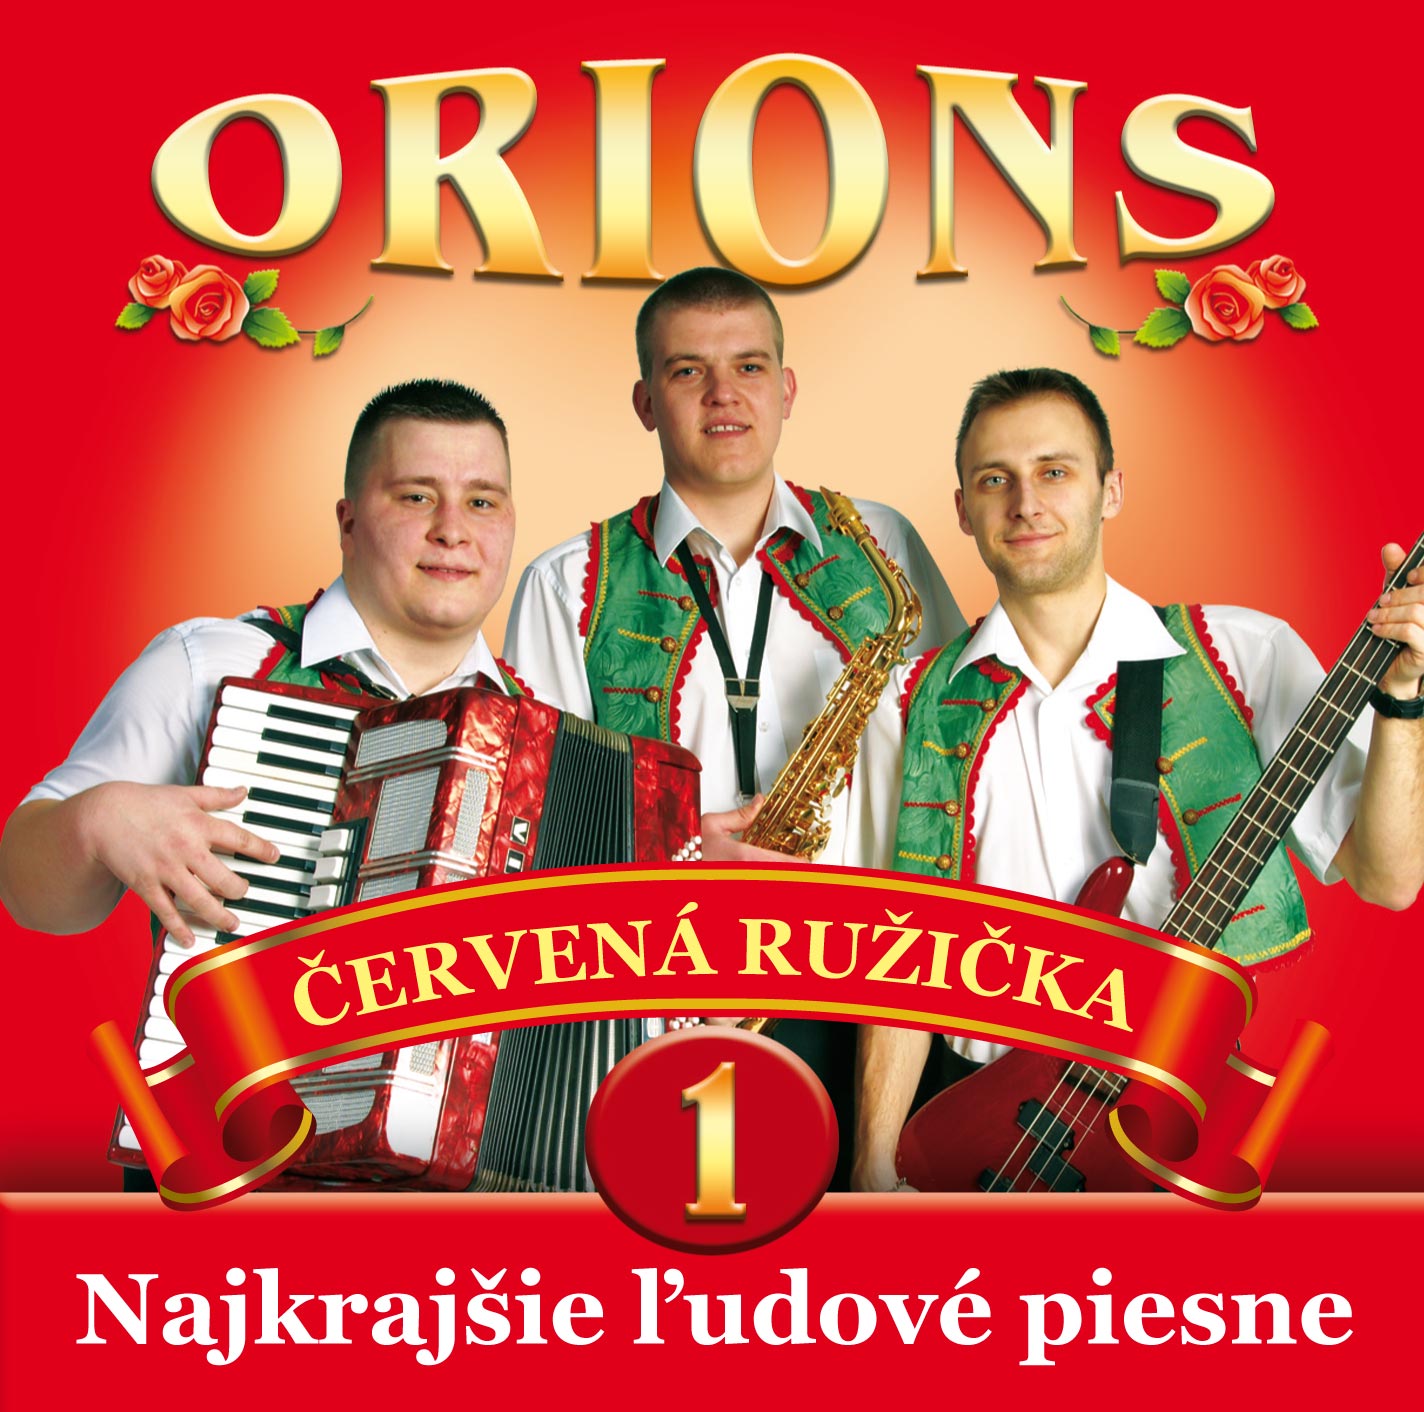 Orions - Červená ružička, Najkrajšie ľudové piesne č.1 (cd)